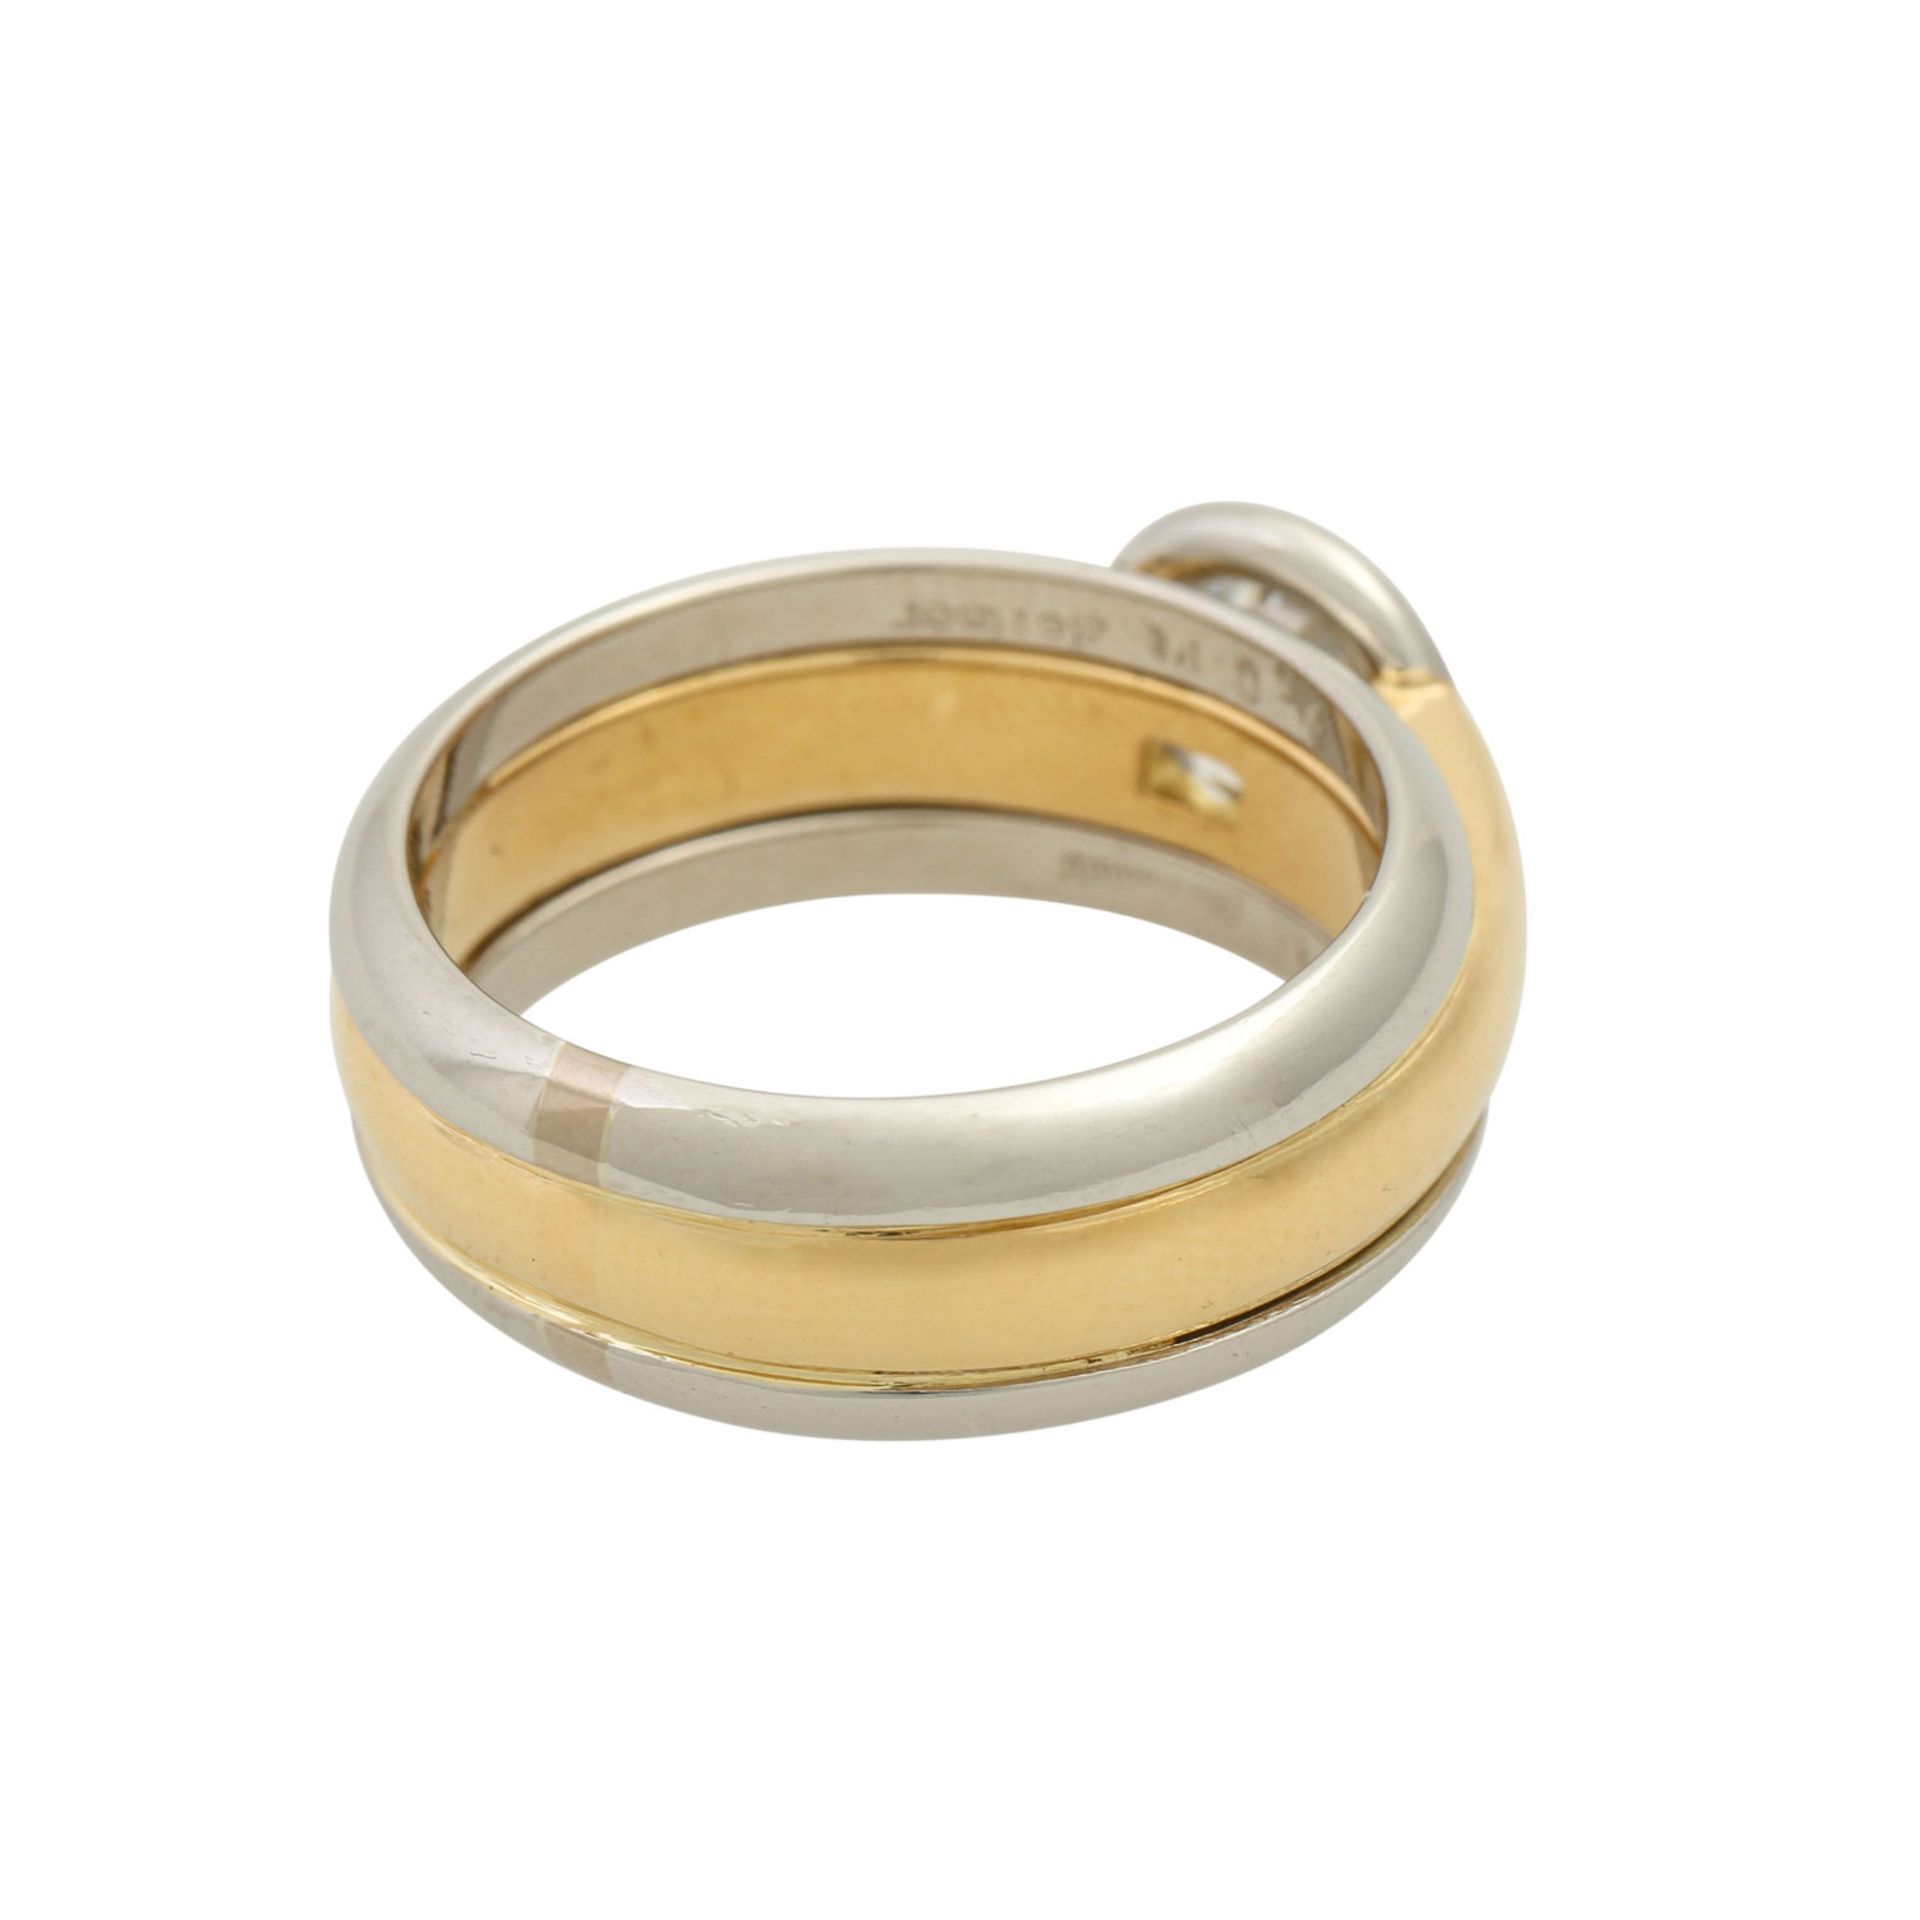 Ring mit Brillant ca. 1,1 ct,ca. FW (G)/VVS, Fluoreszenz: sehr schwach, GG 18K/Platin, - Bild 3 aus 5